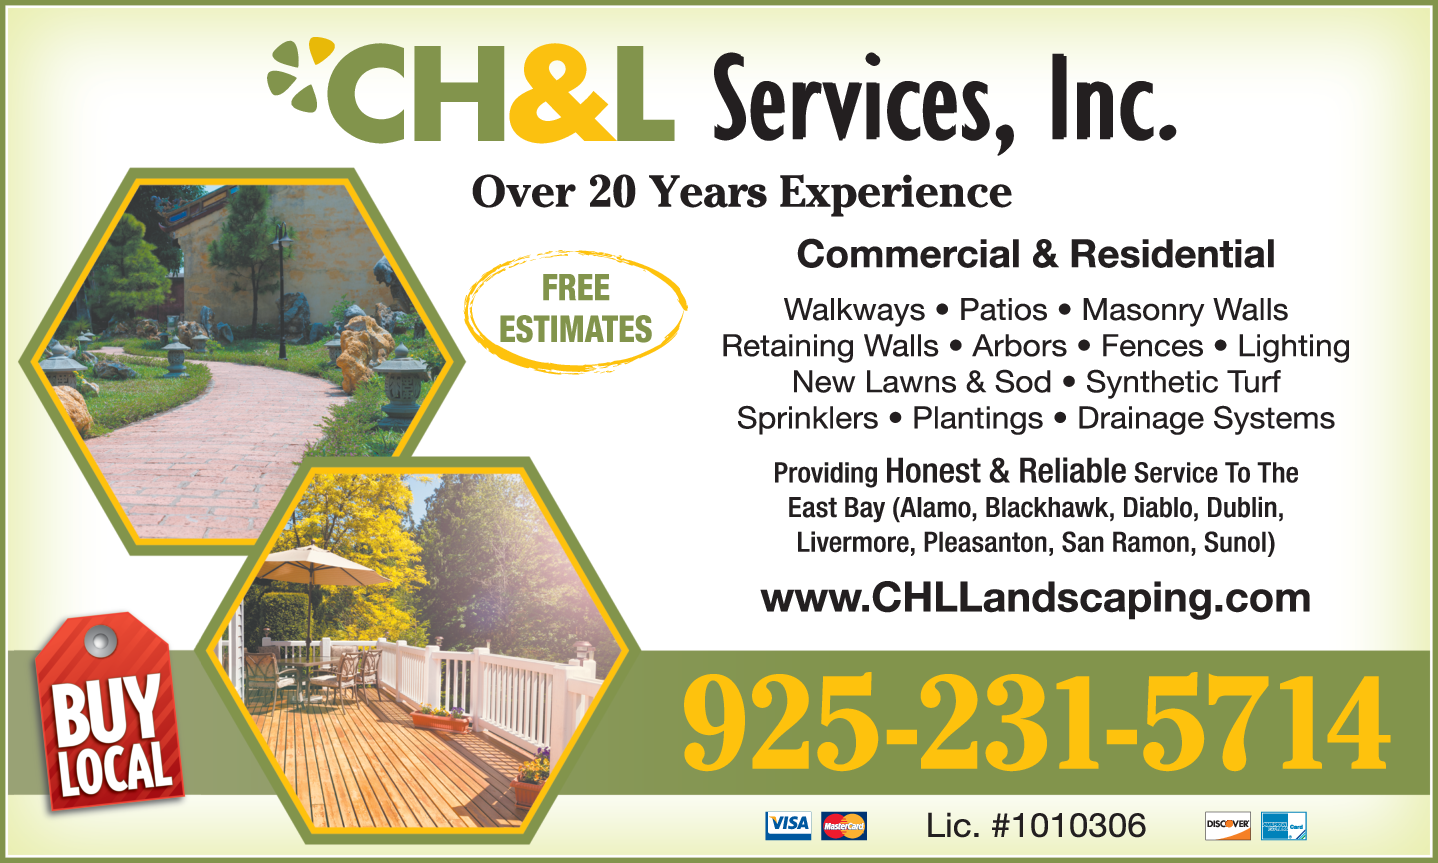 C H & L Services Inc